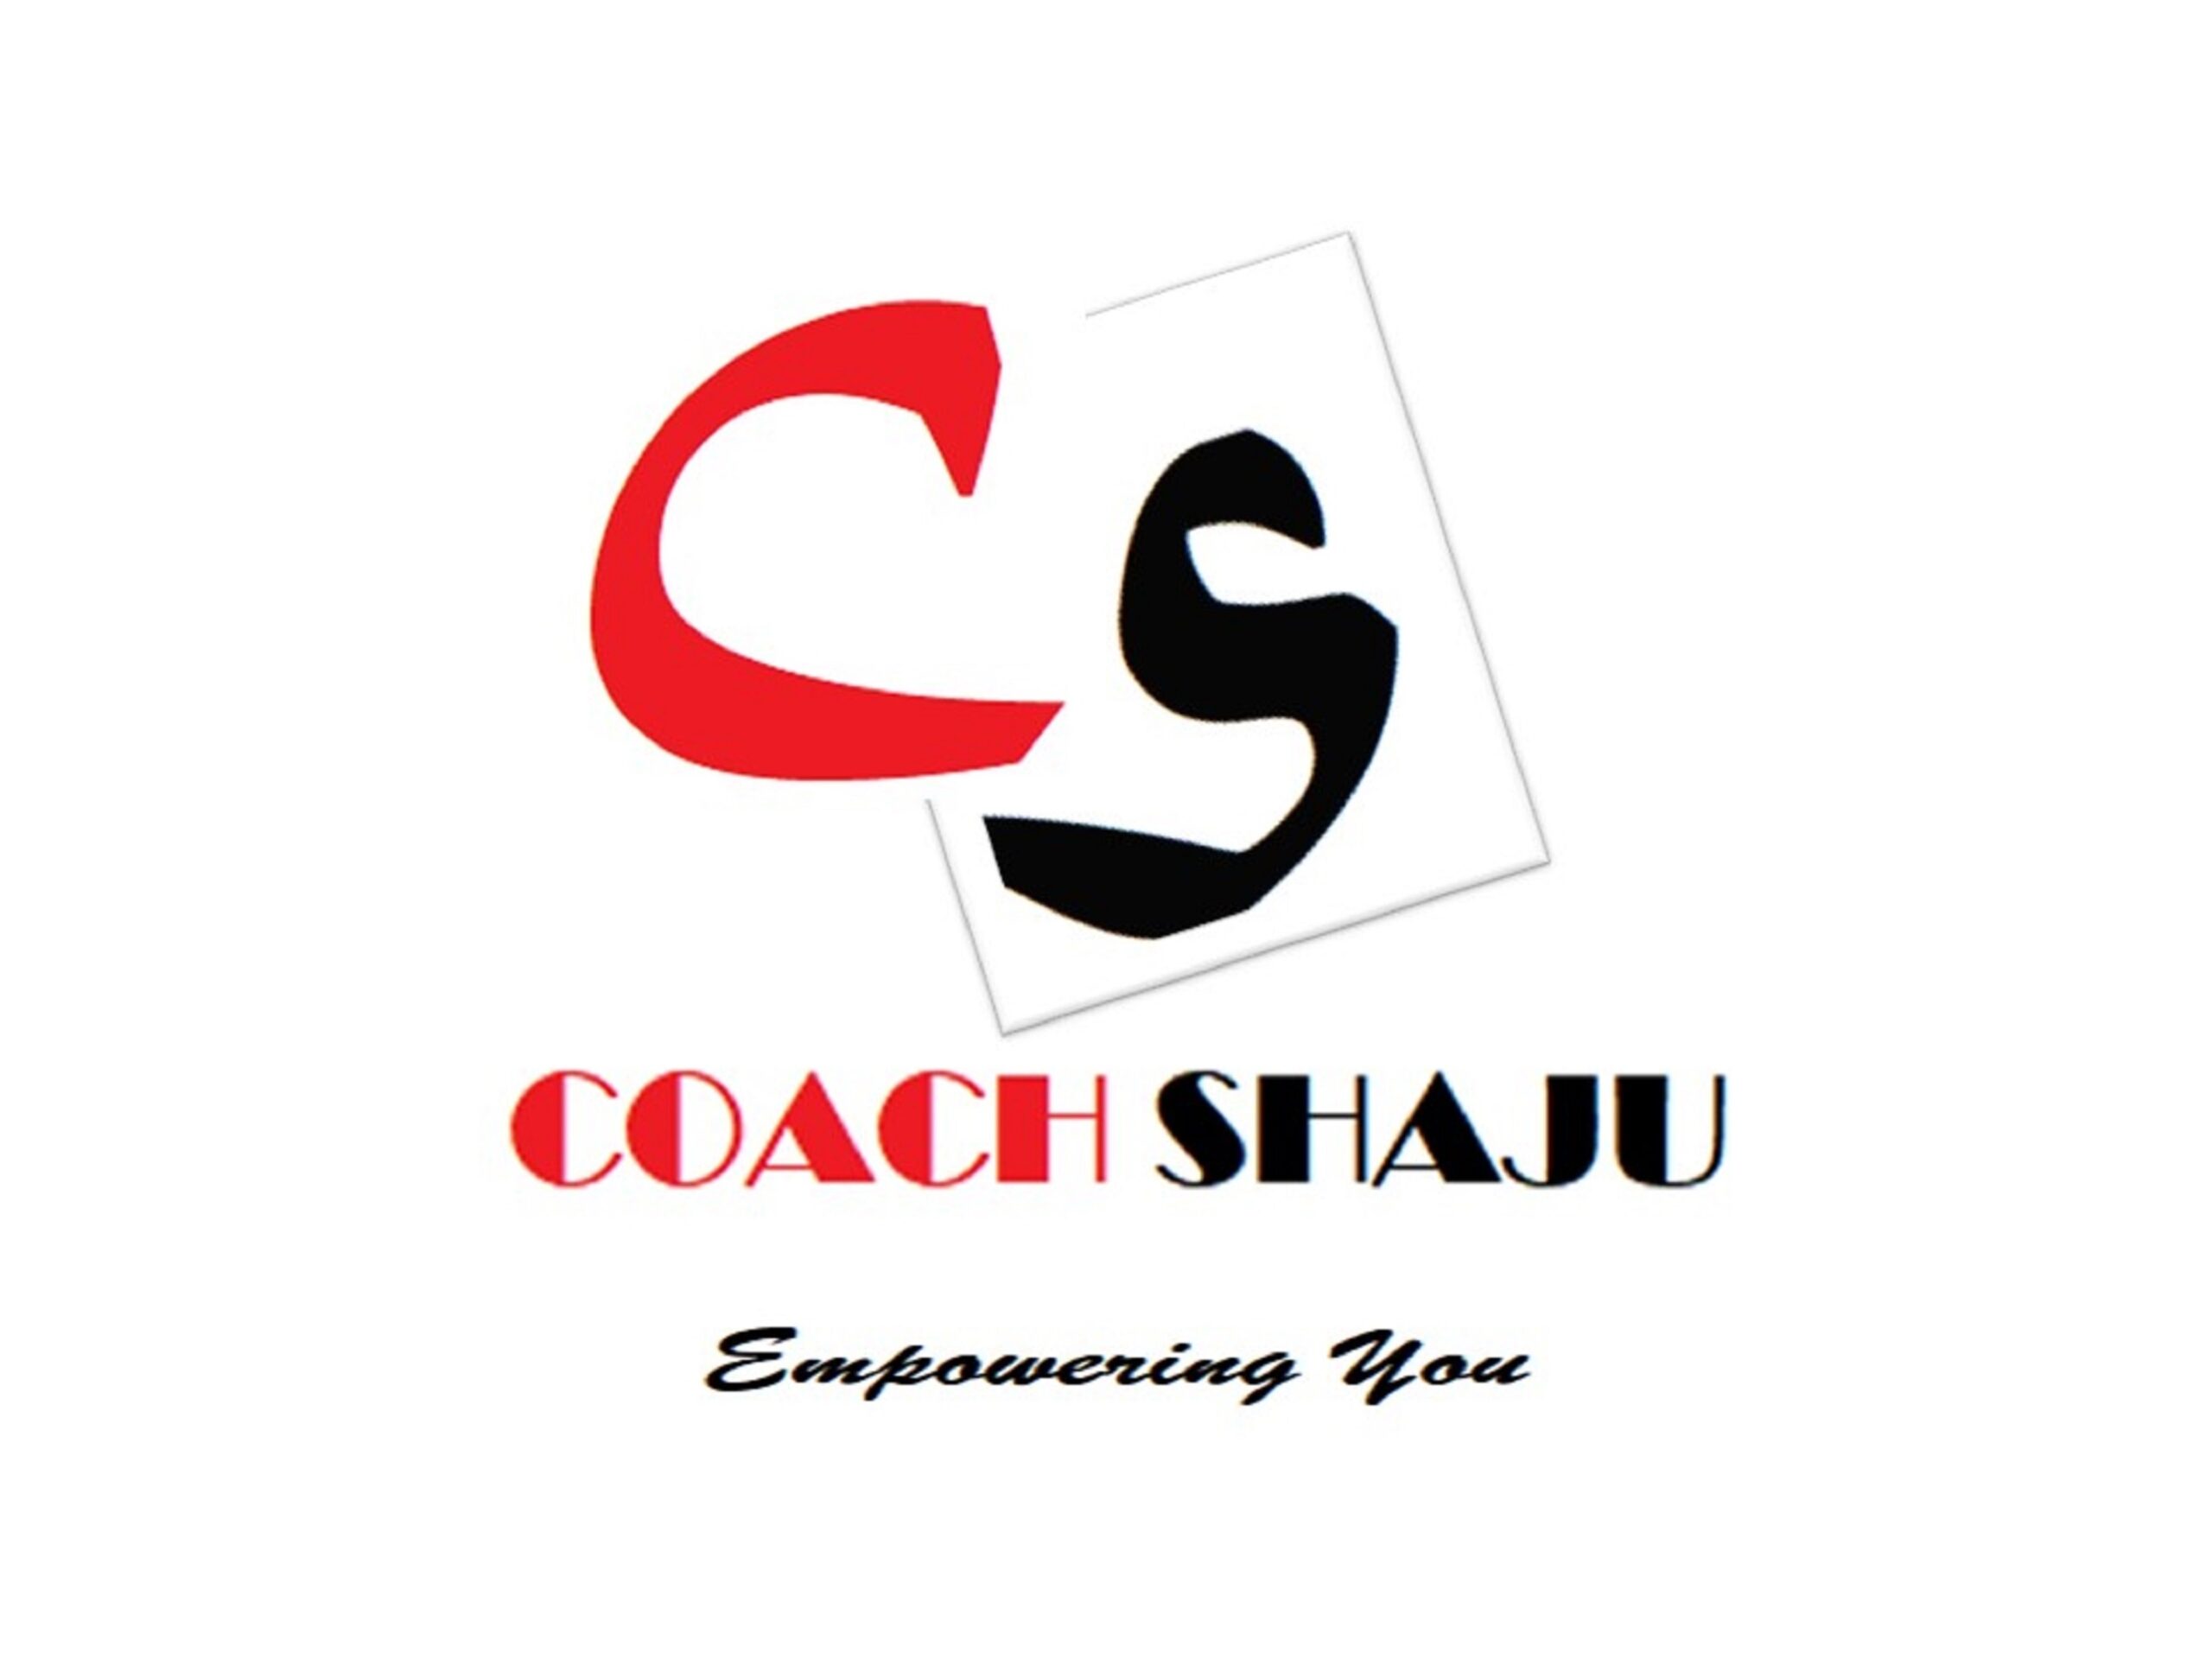 Coach Shaju